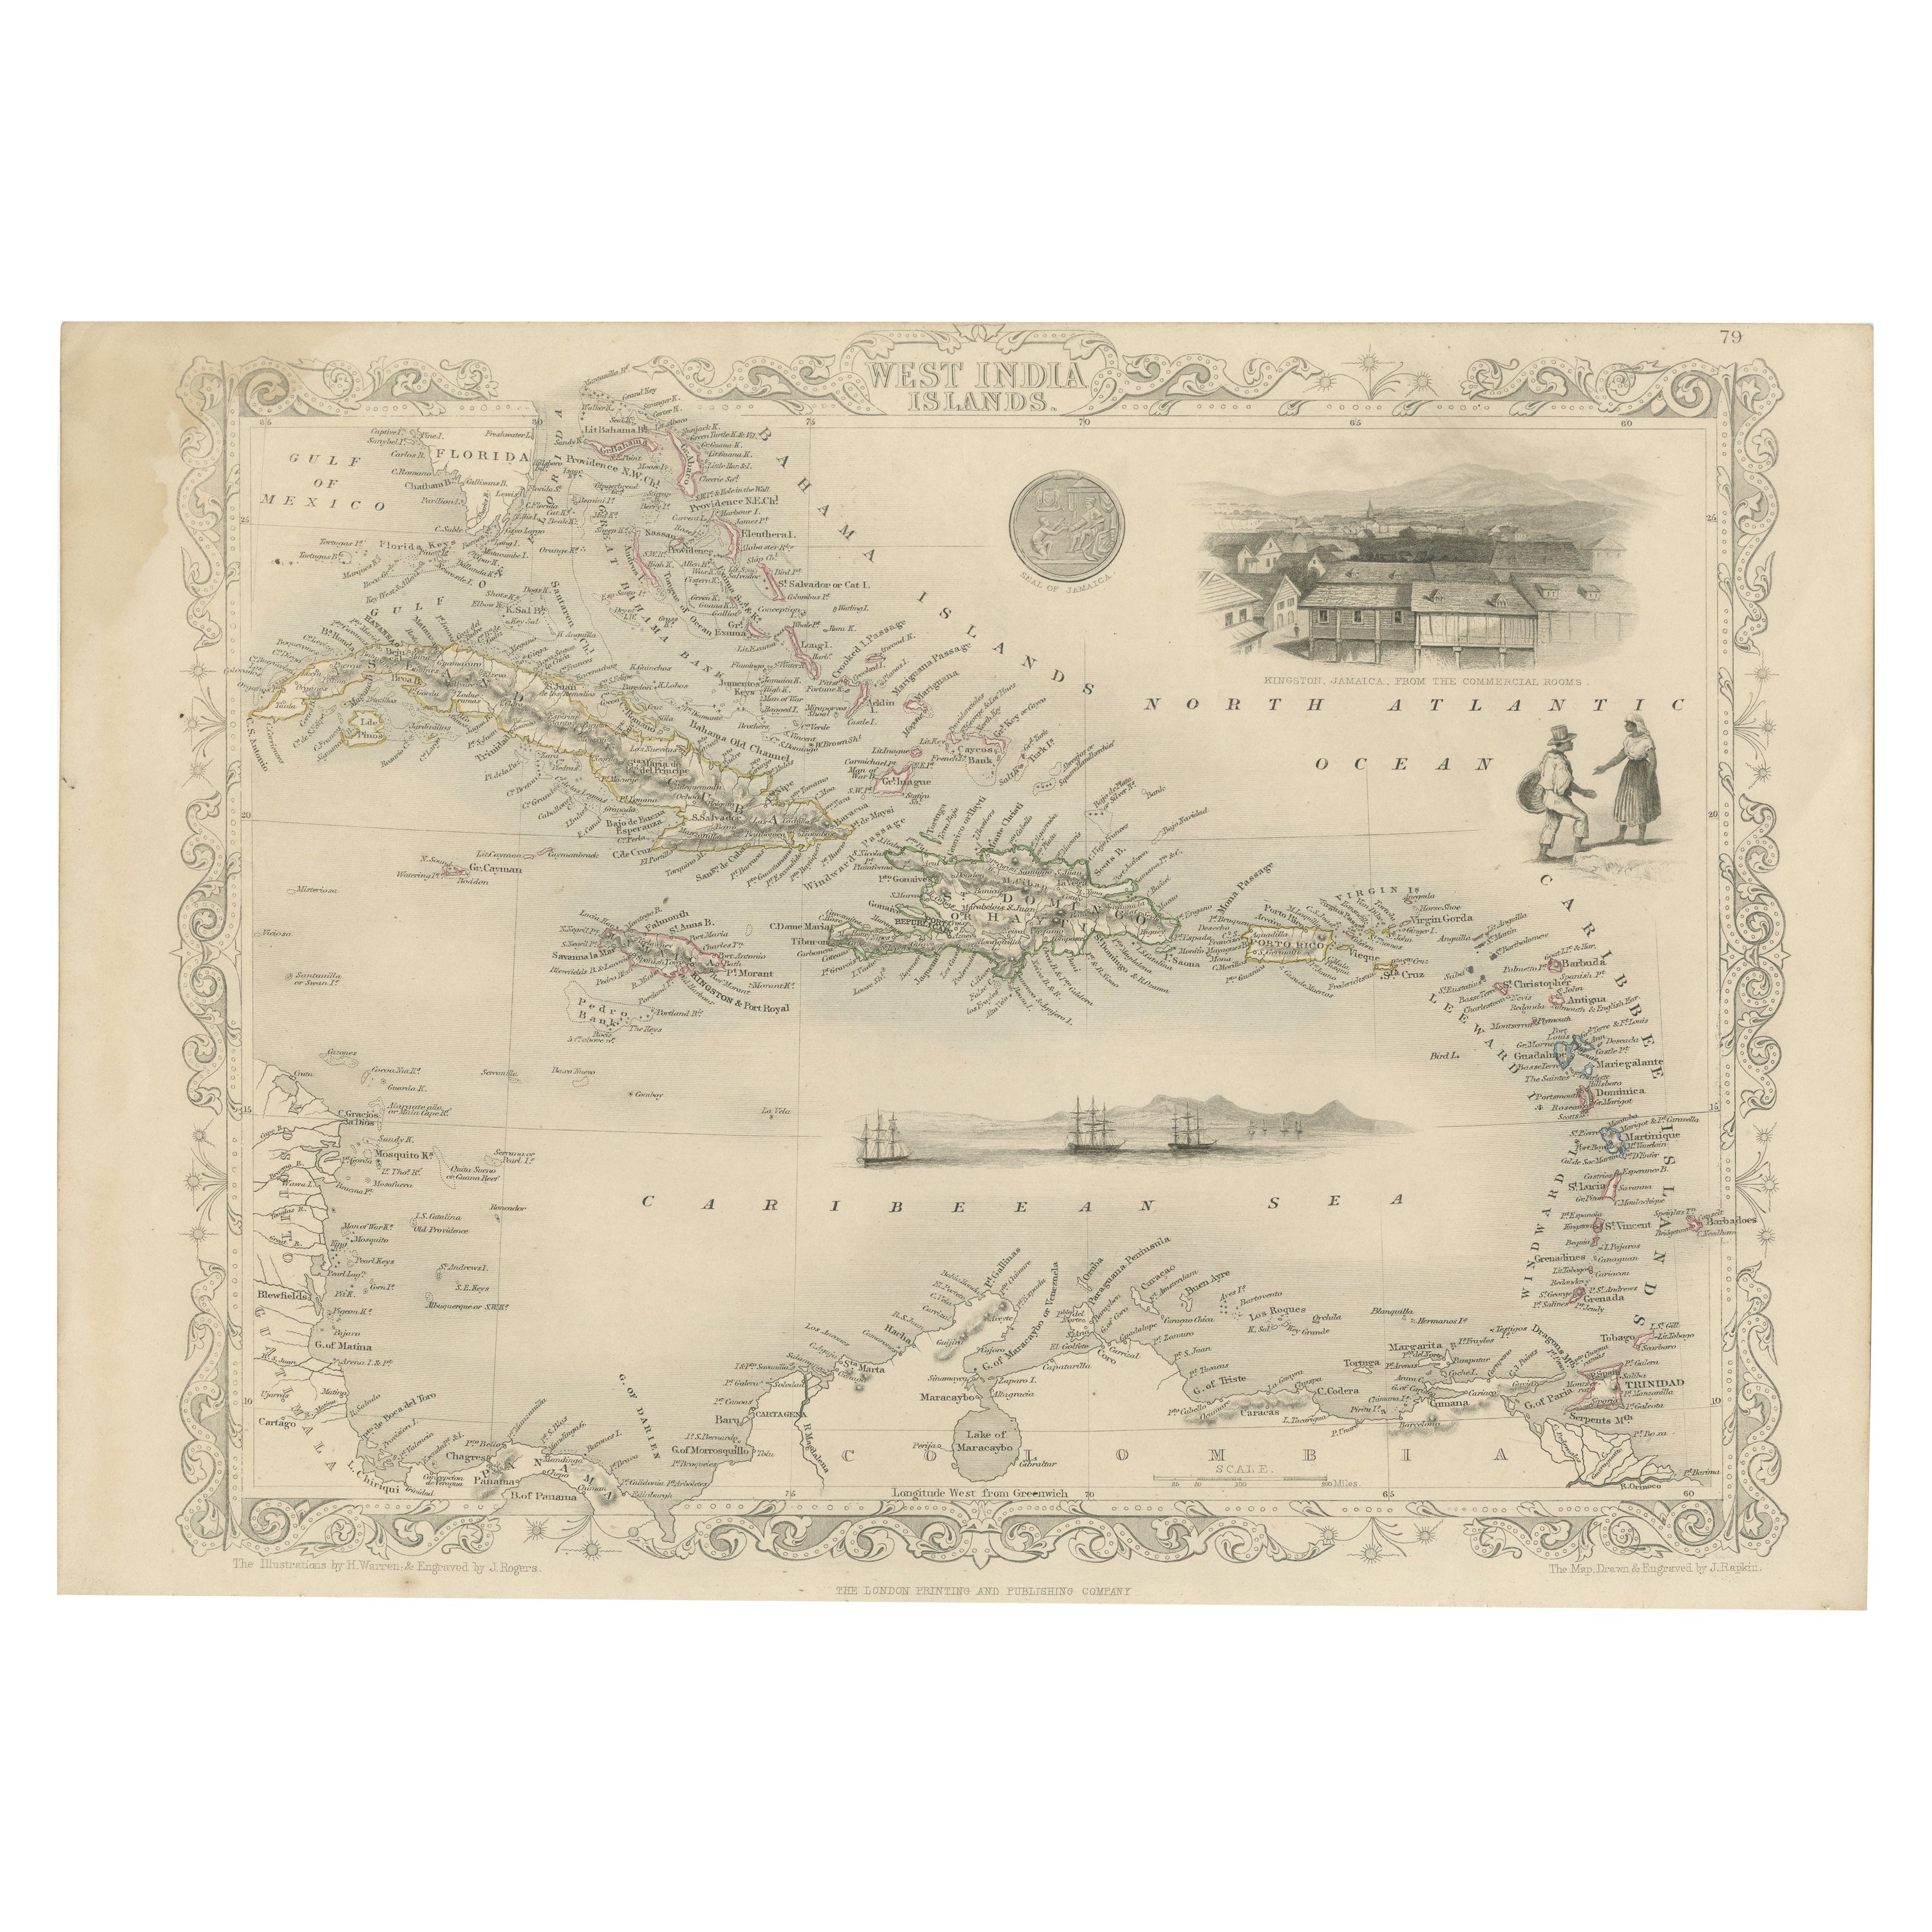  Gravur von Tallis und Rapkin von der Karte der Westindischen Inseln in der Karibik, 1851